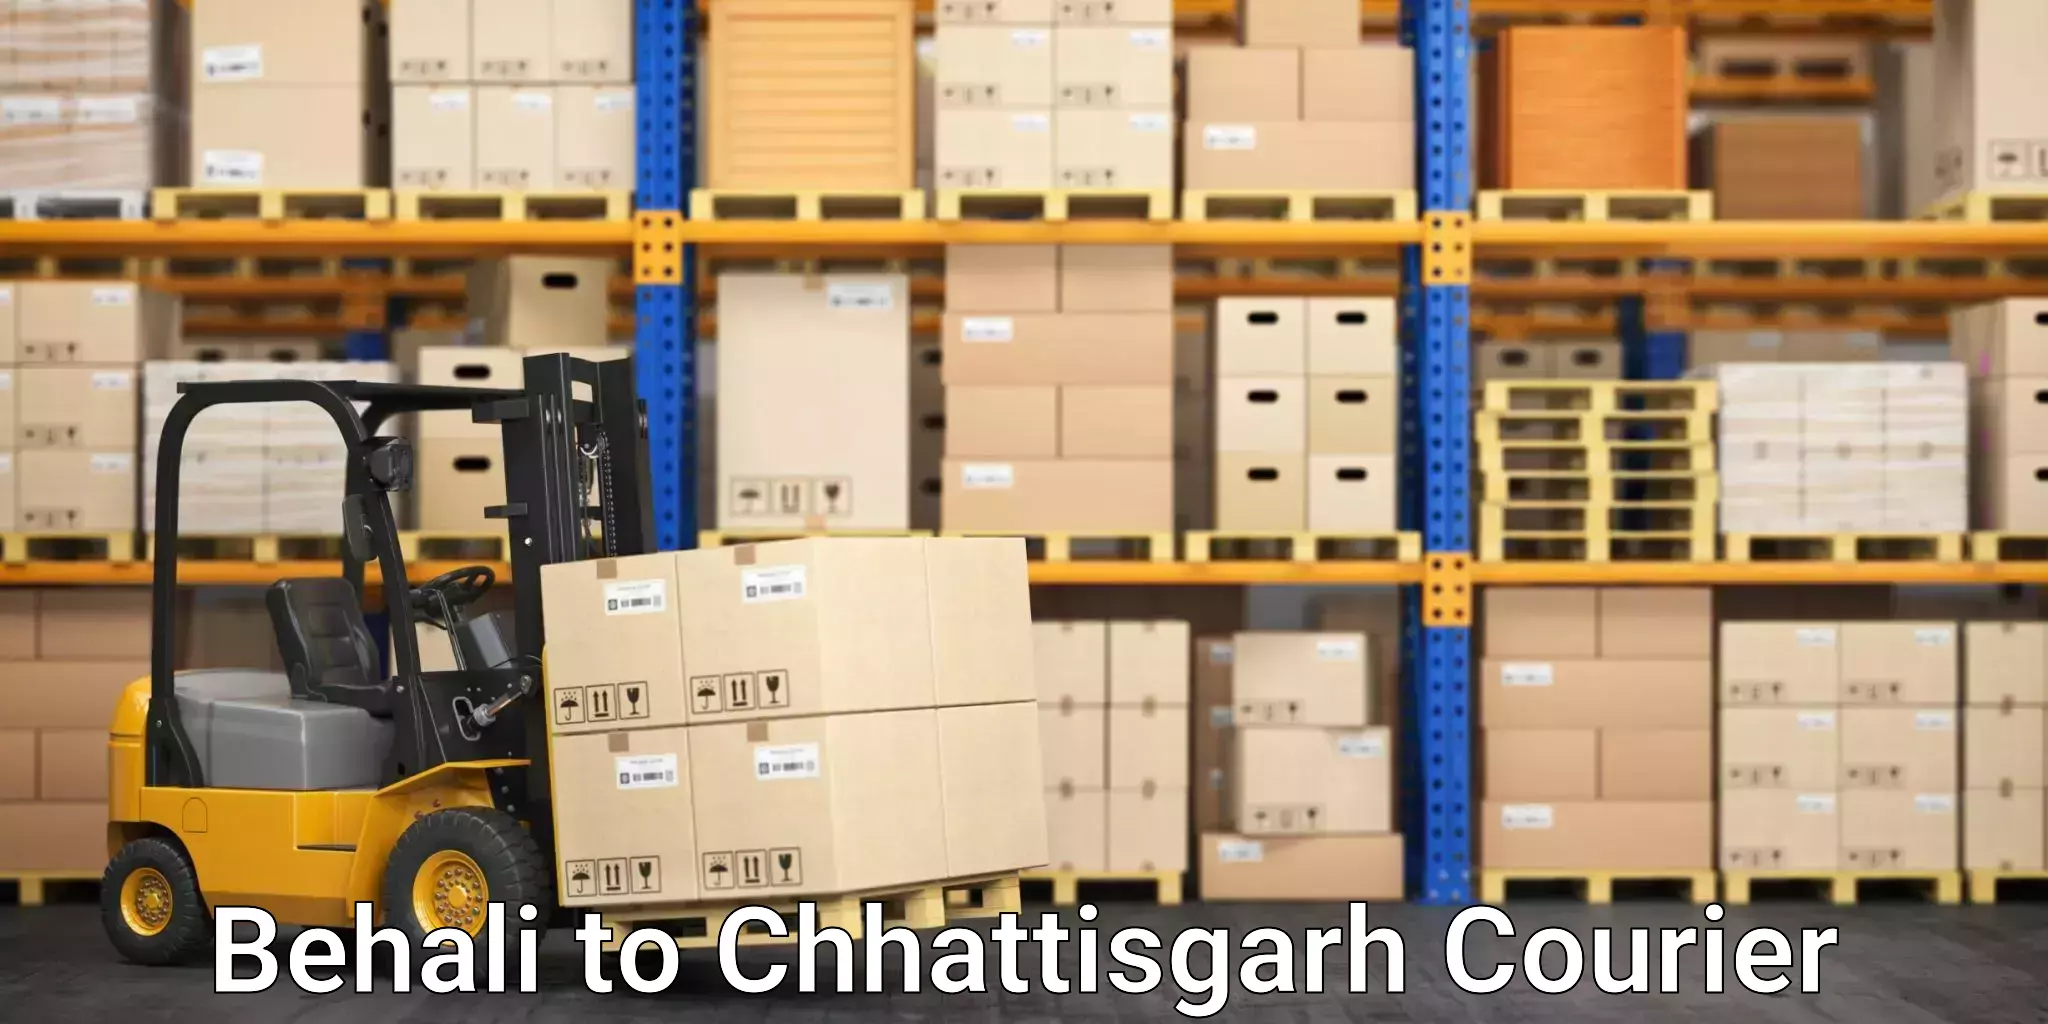 Urban courier service Behali to Bijapur Chhattisgarh